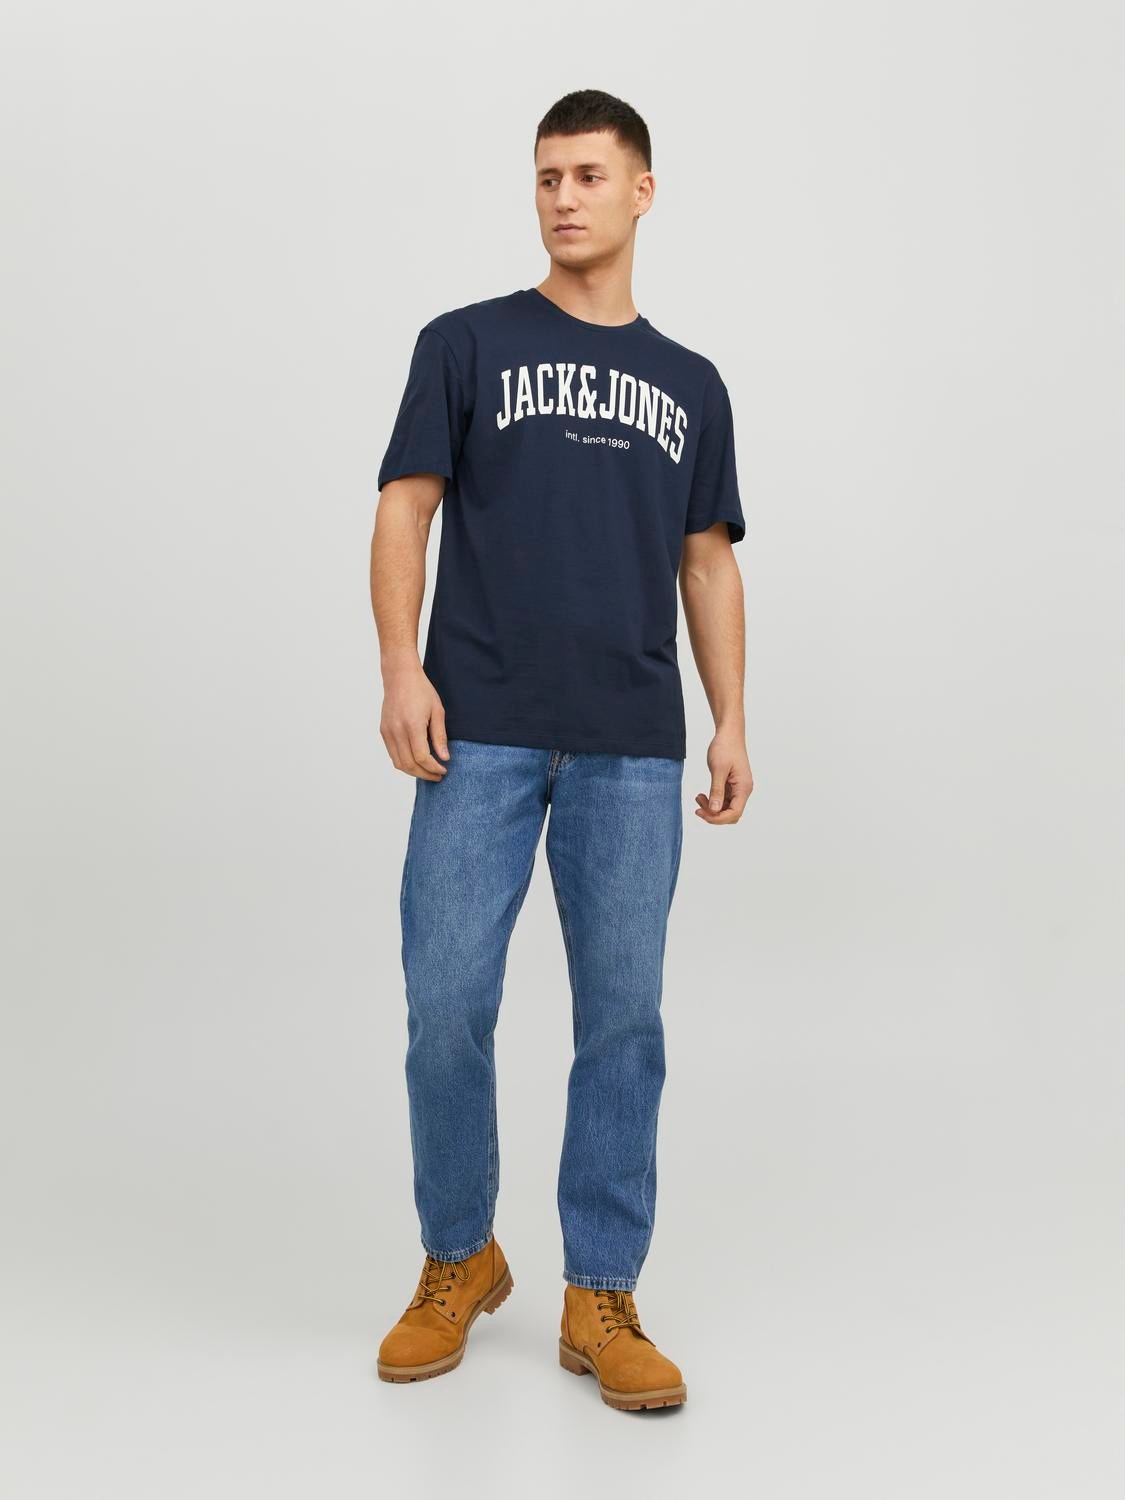 Jack & Jones T-shirt Logo Decote Redondo -Navy Blazer - 12236514